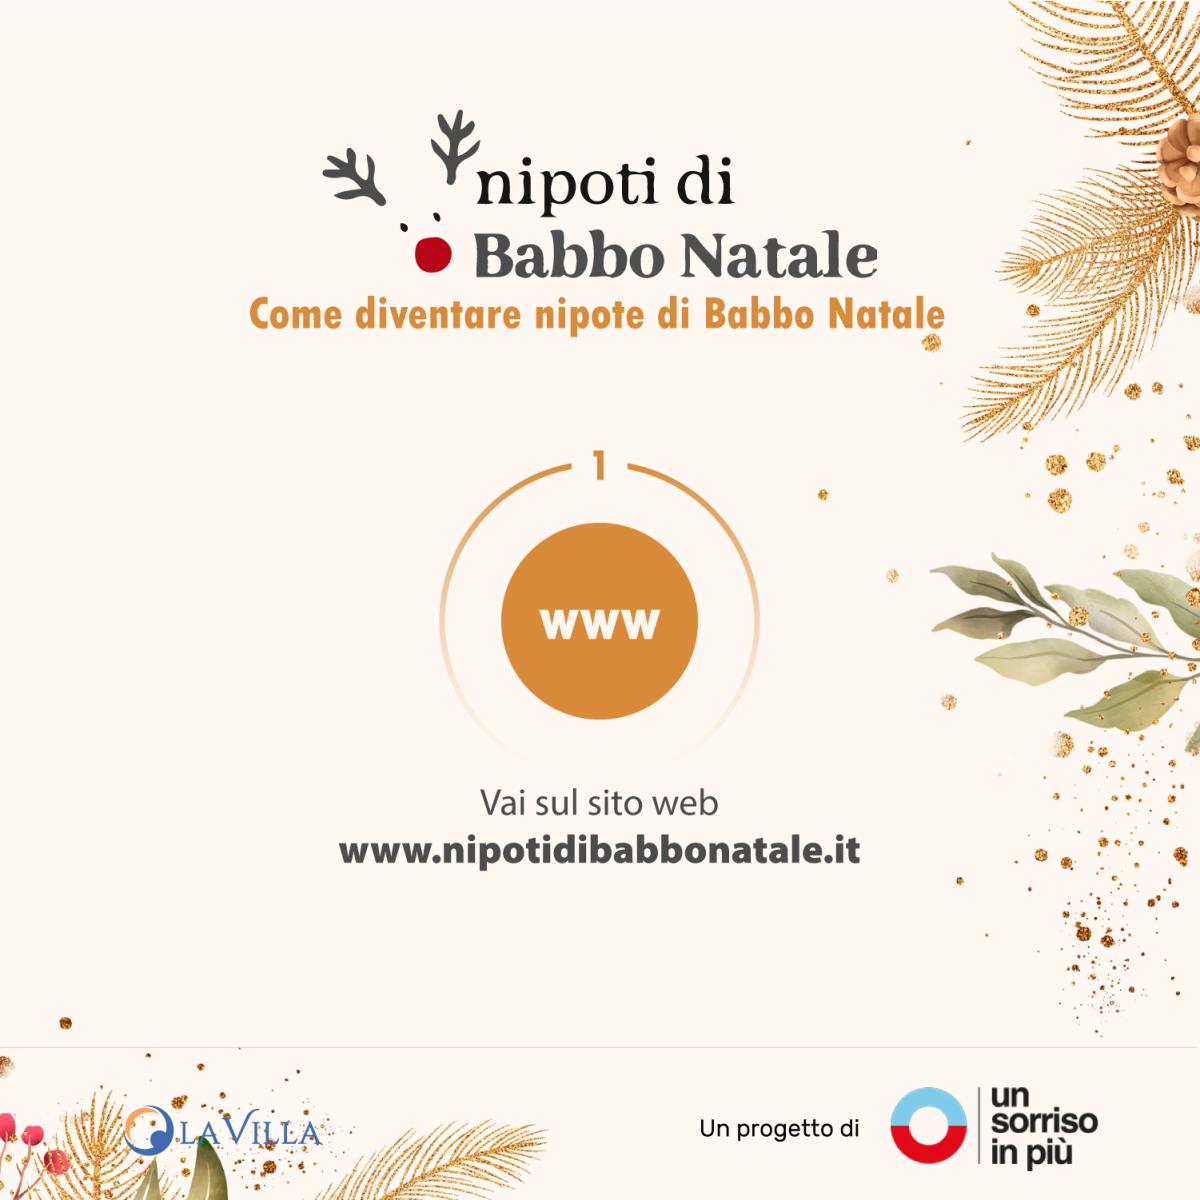 Step-01-Nipoti-di-babbo-Natale-LaVilla-100